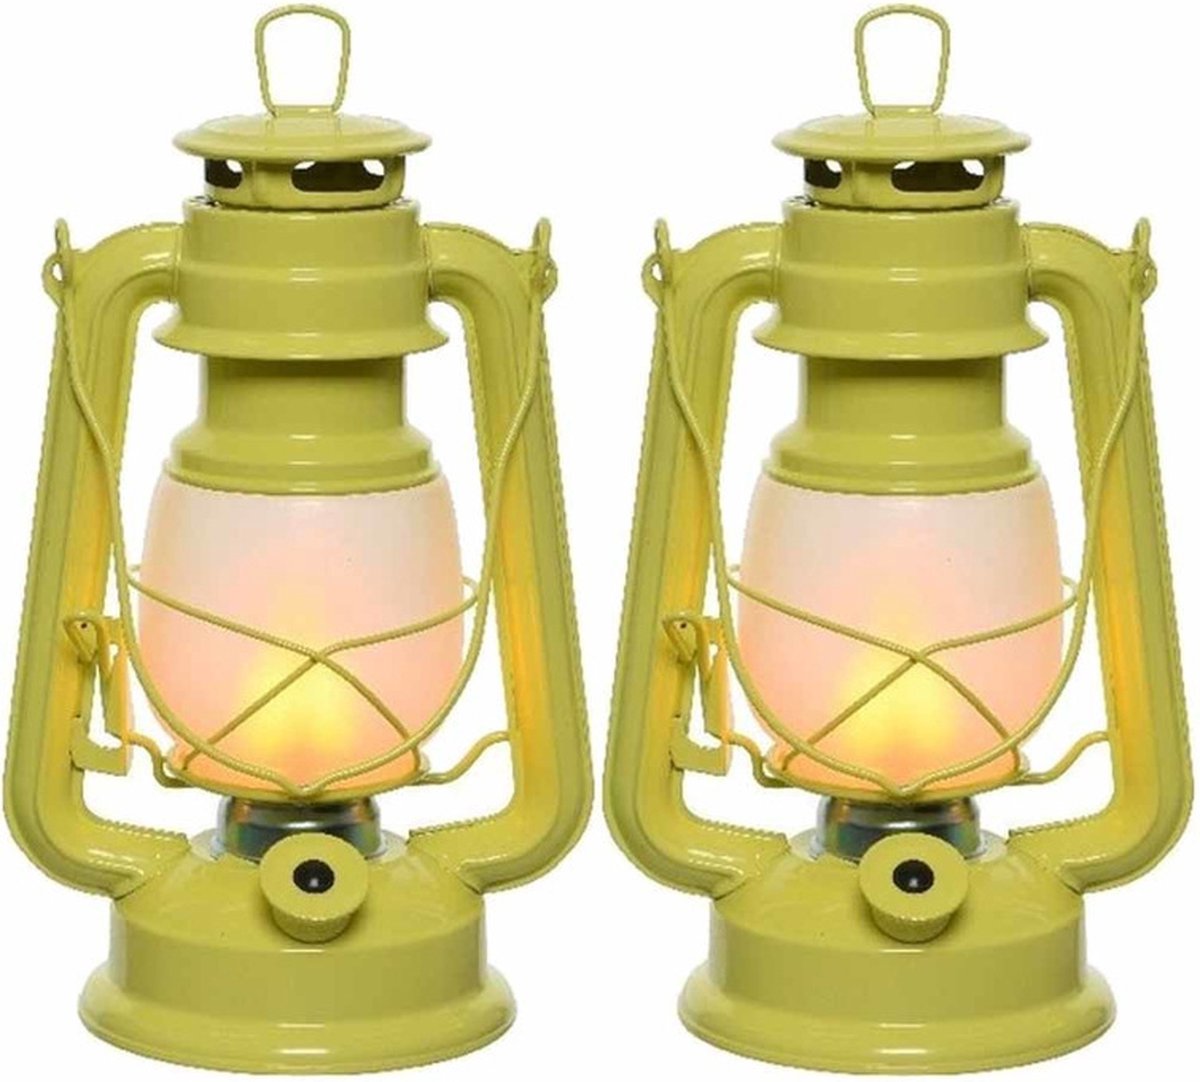 Lanterne De Camping 3-en-1 - Lampe De Poche LED Effet Flamme